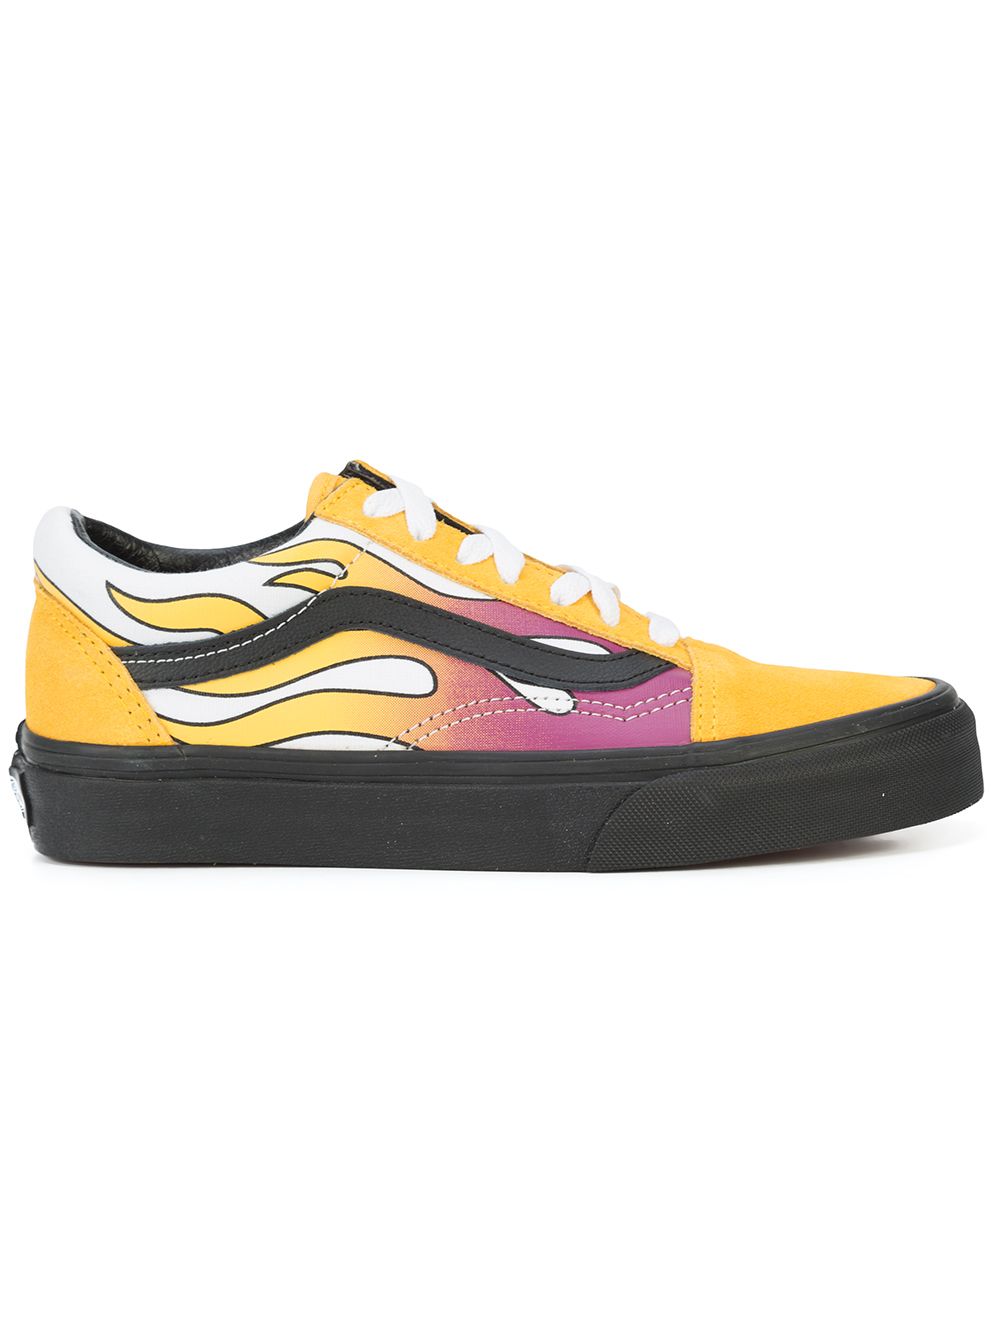 Vans Old School sneakers - Yellow von Vans